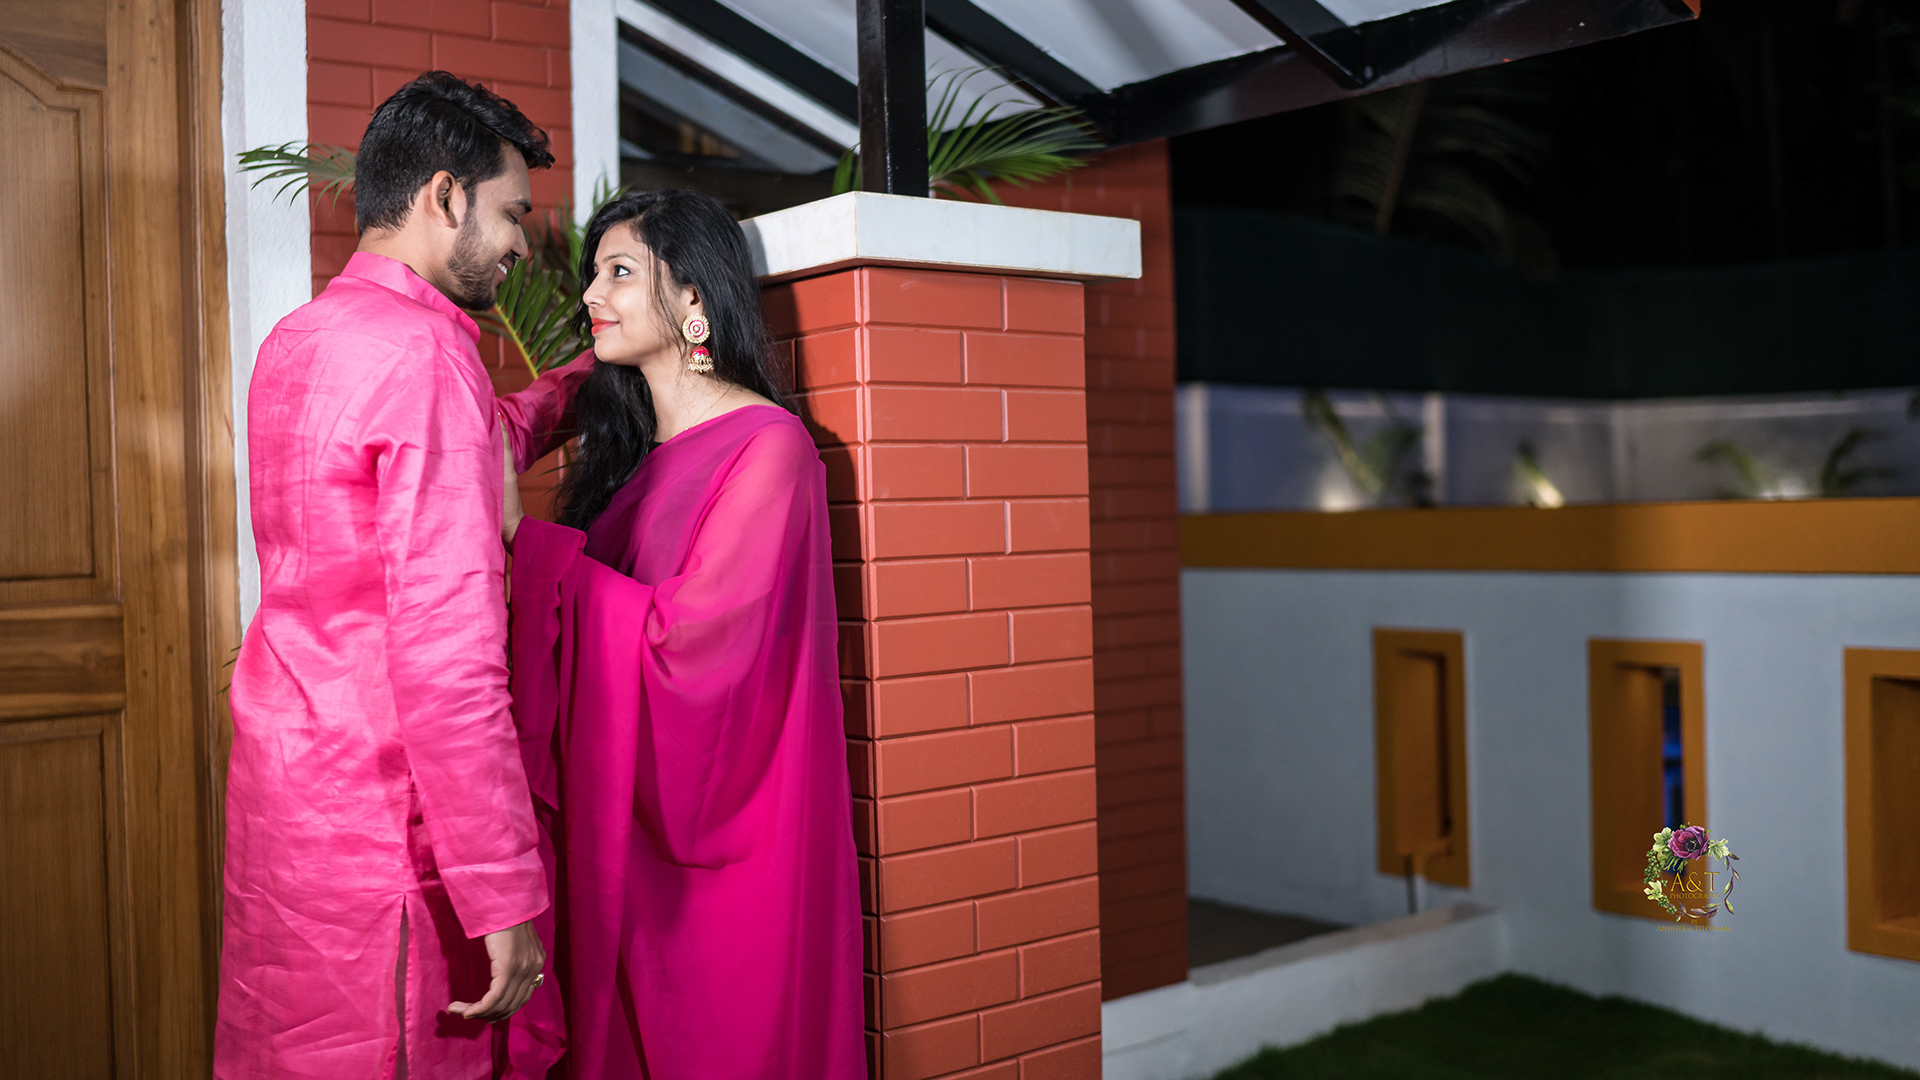 Chandani & Aaditya01| Romantic Pre-wedding Ideas | Photographer in Pune|India 